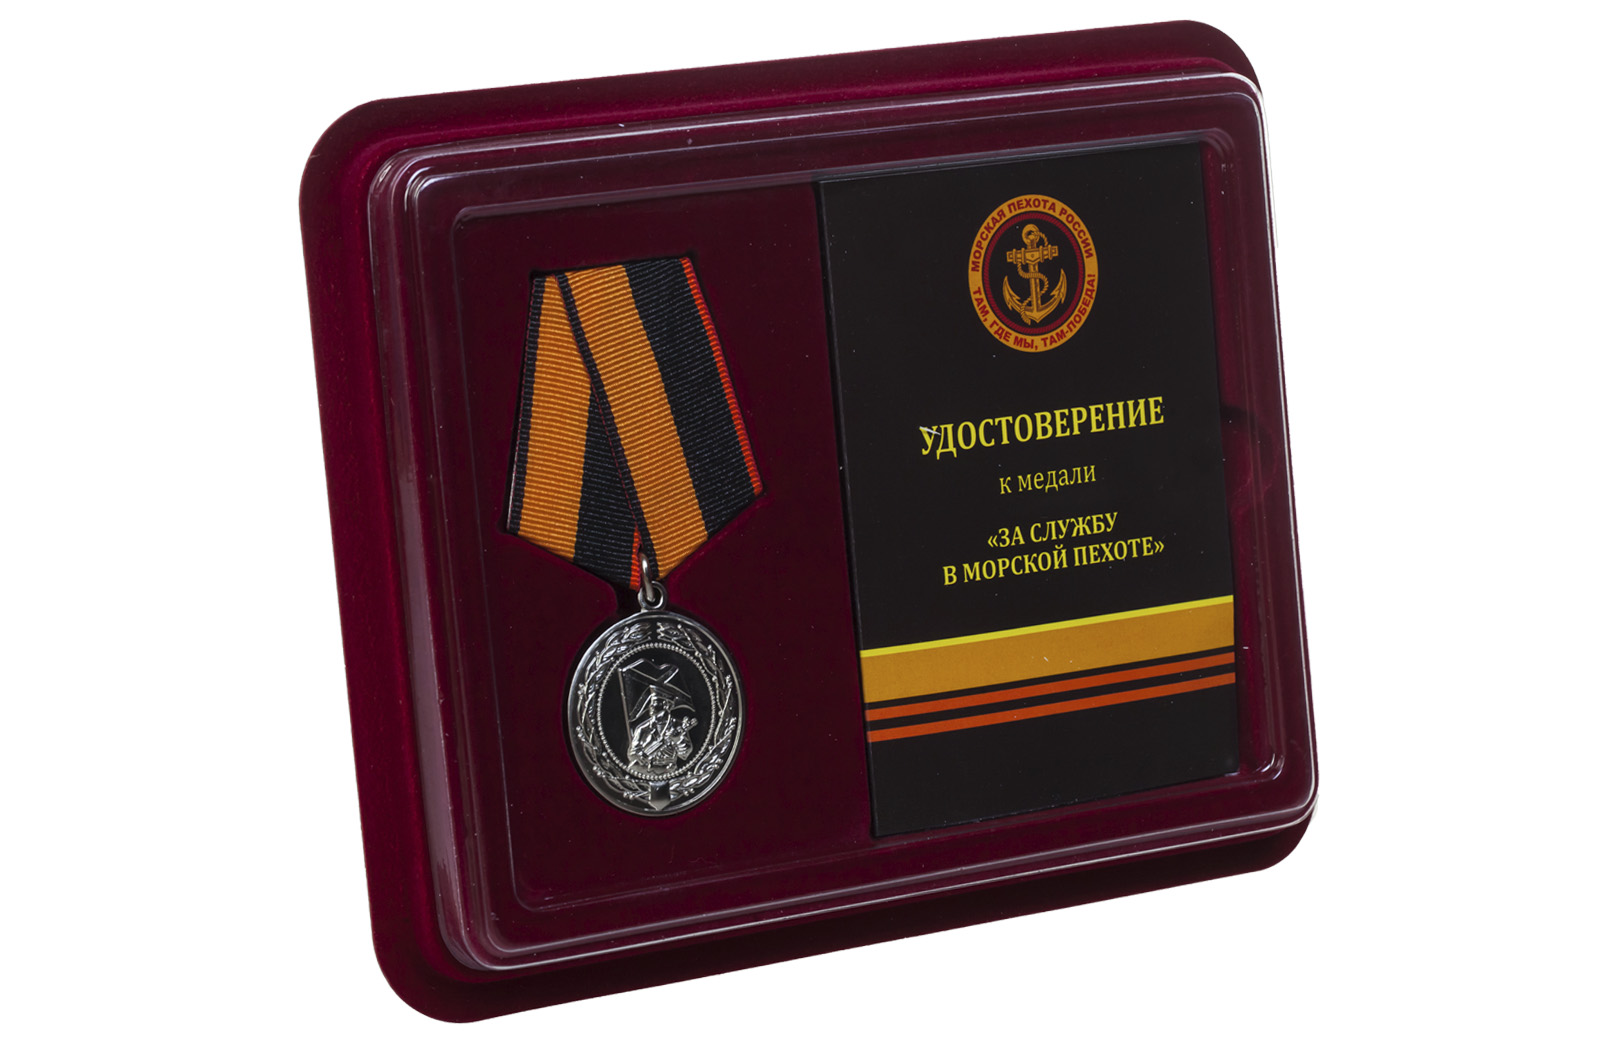 Купить медаль За службу в морской пехоте МО РФ оптом выгодно